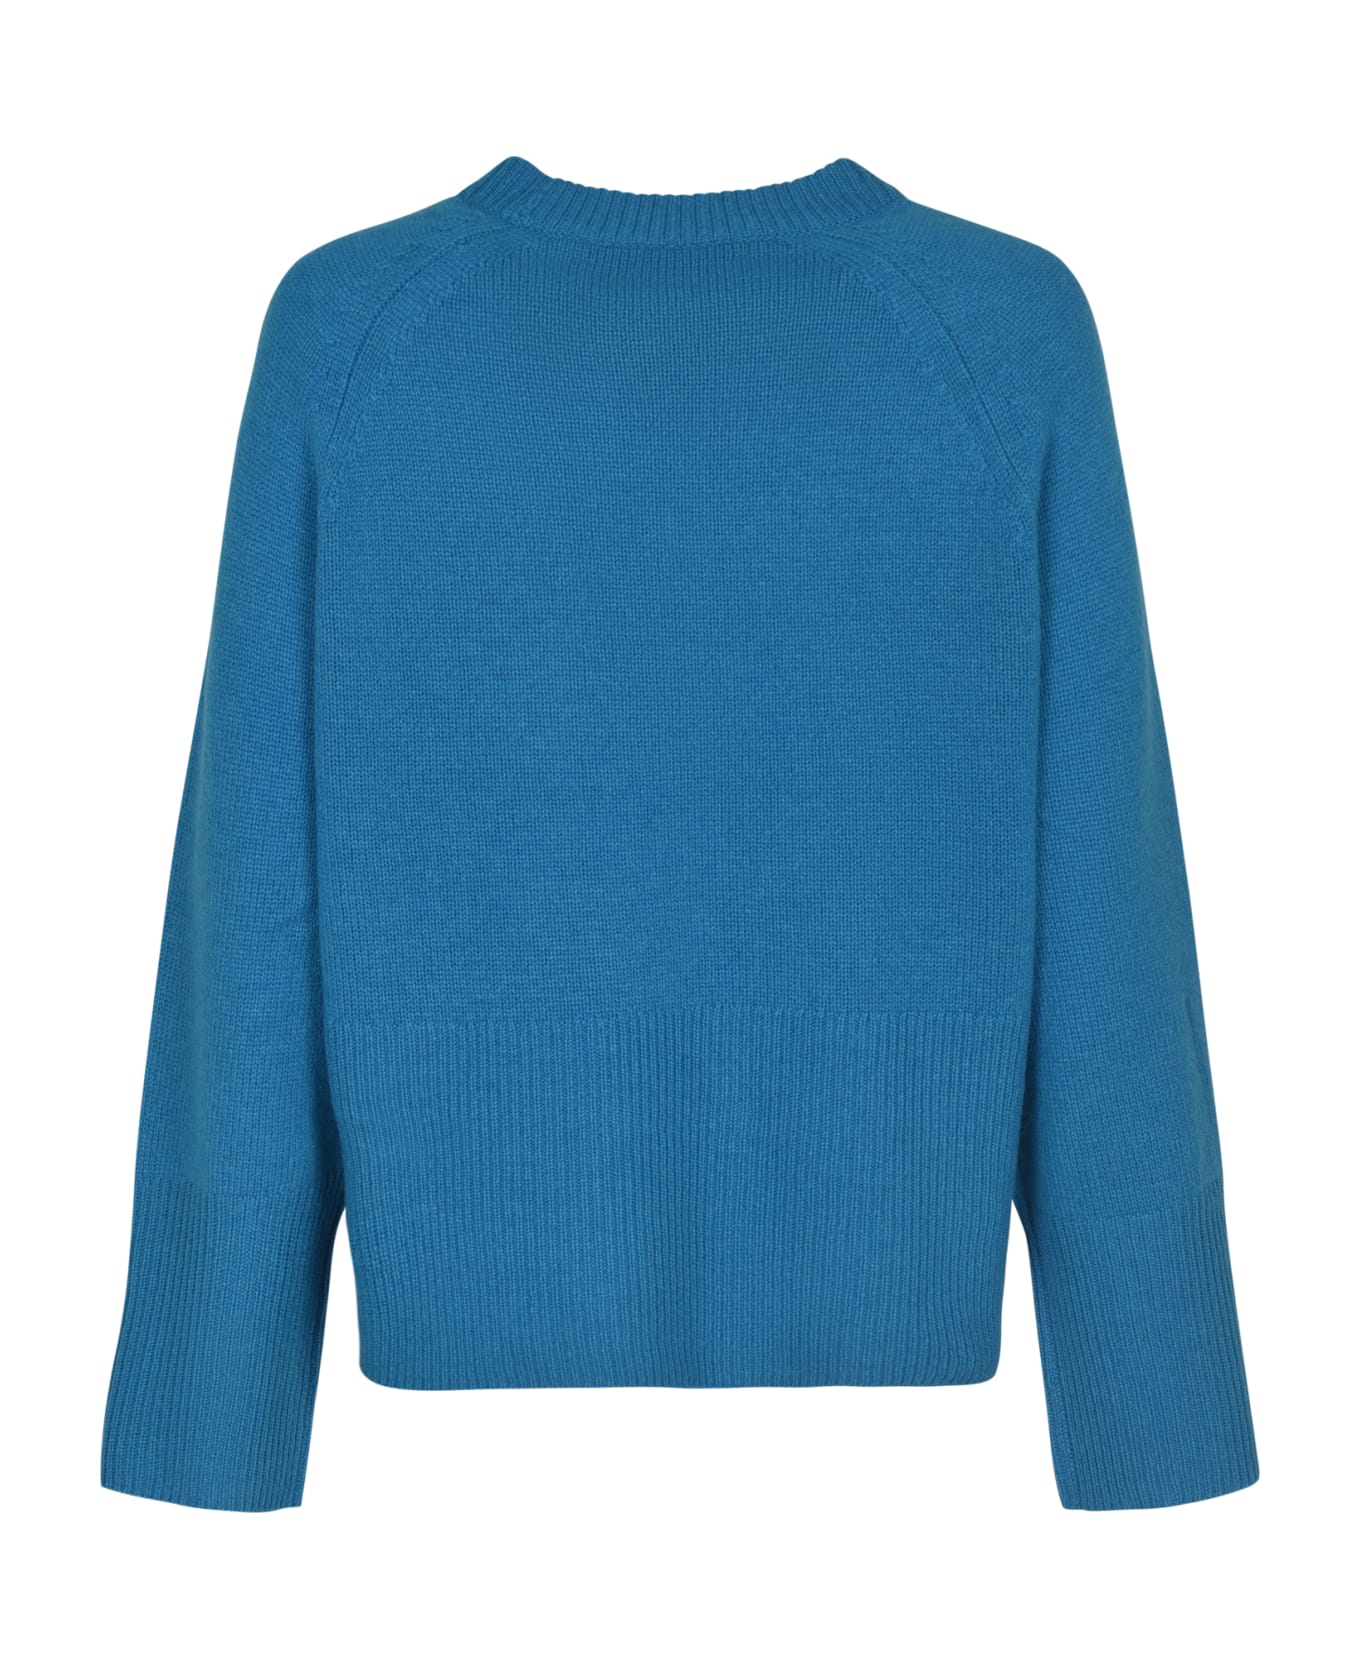 360Cashmere Rib Knit Sweater - Turquoise ニットウェア